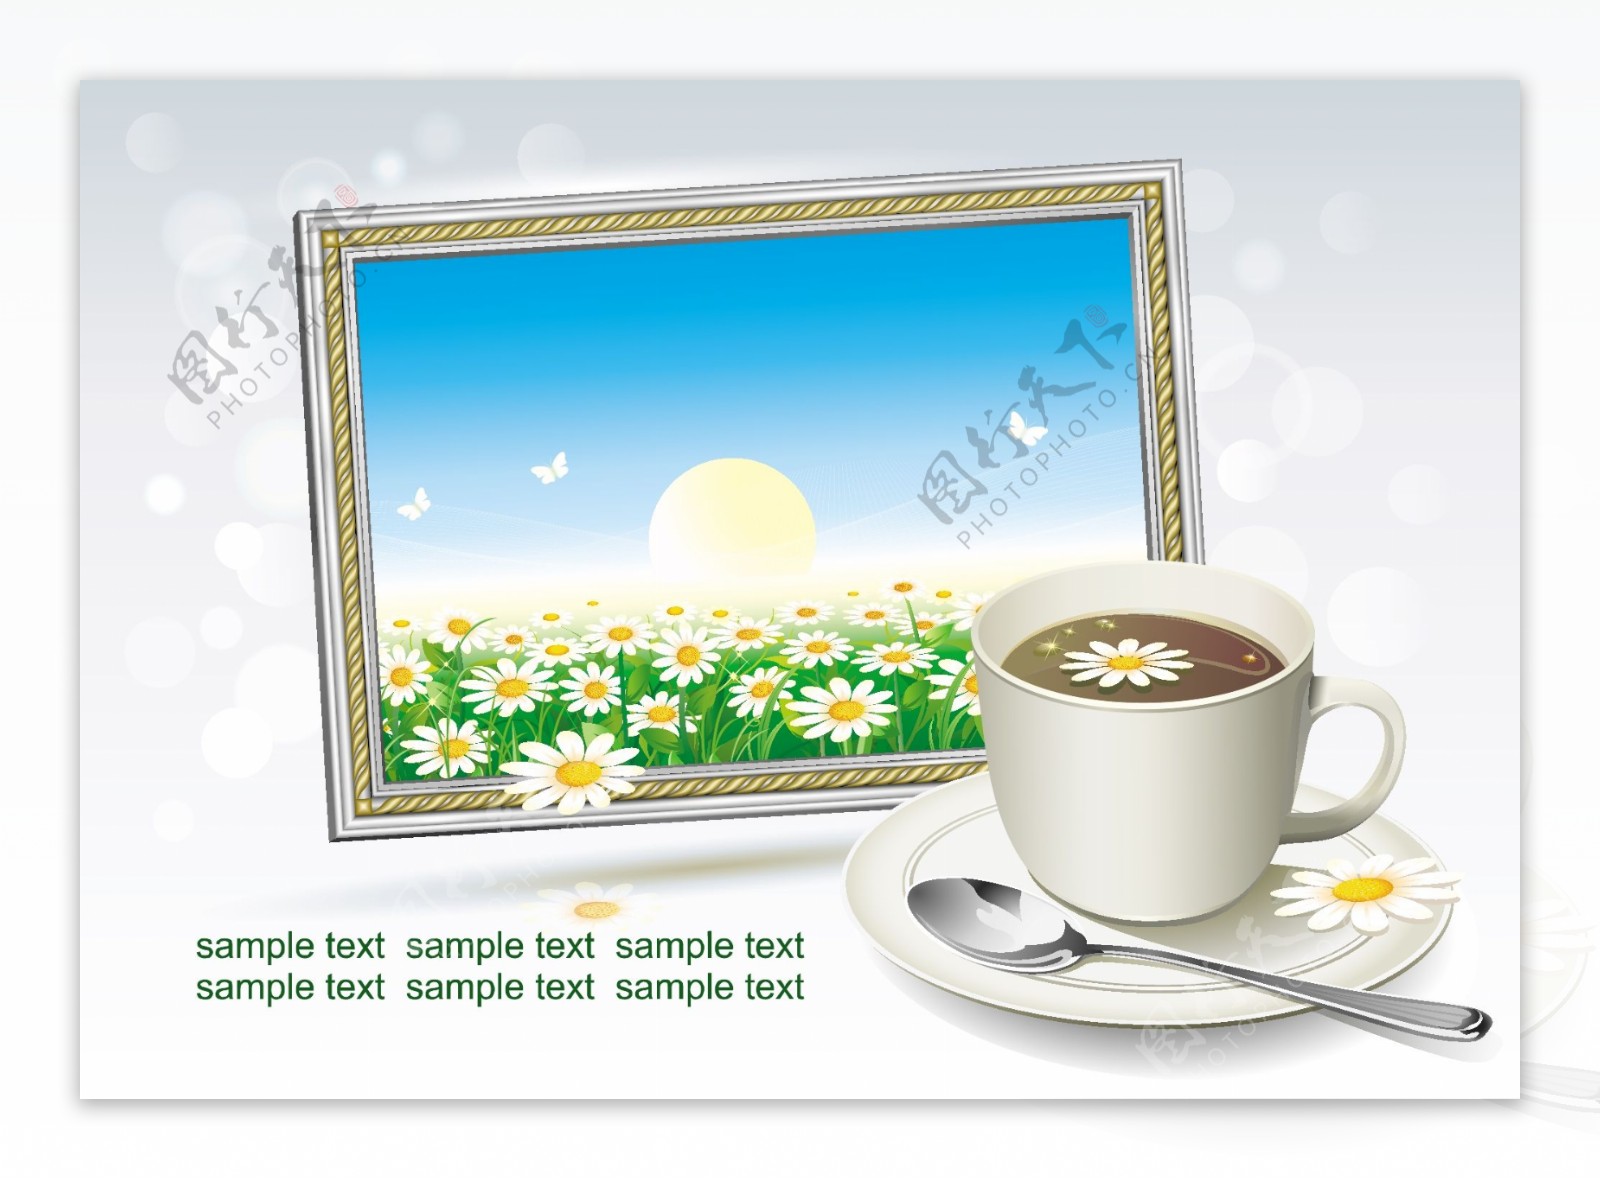 一杯咖啡和相框内的春天风景图片